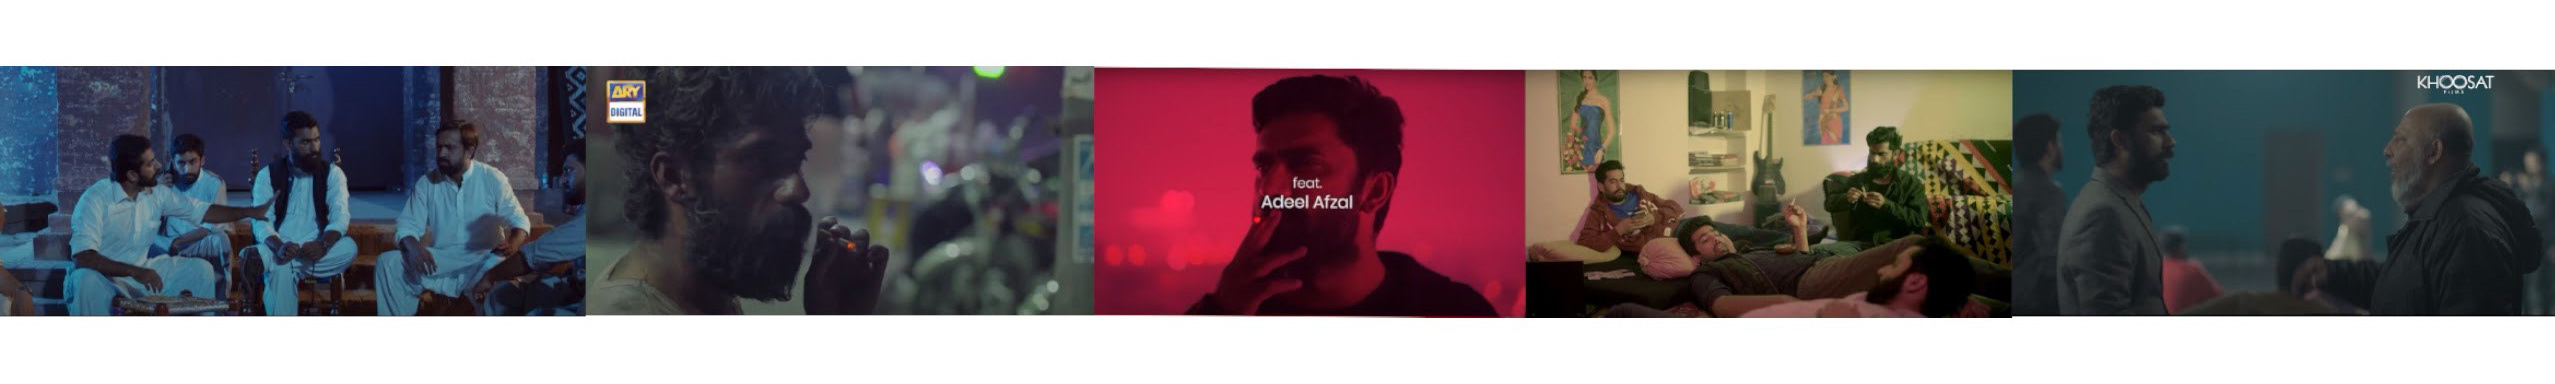 Profil-Banner von Adeel Afzal